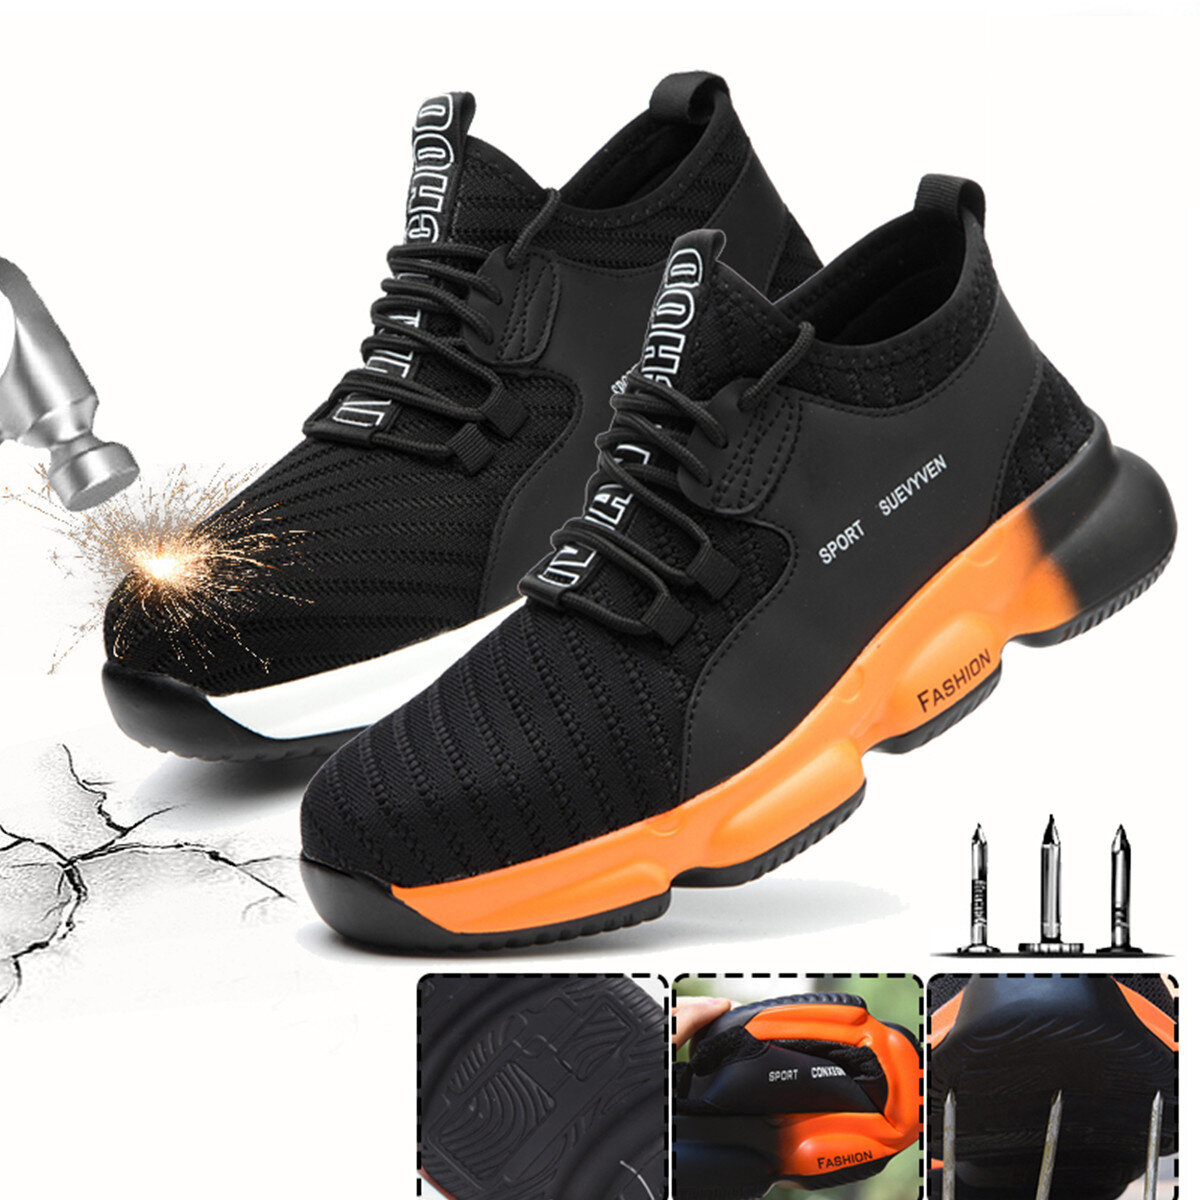 Παπούτσια εργασίας Unisex Safety Flying Weaving Ατσάλι Toe Cap Running Shoes Camping Climbing Walking Jogging Sneakers